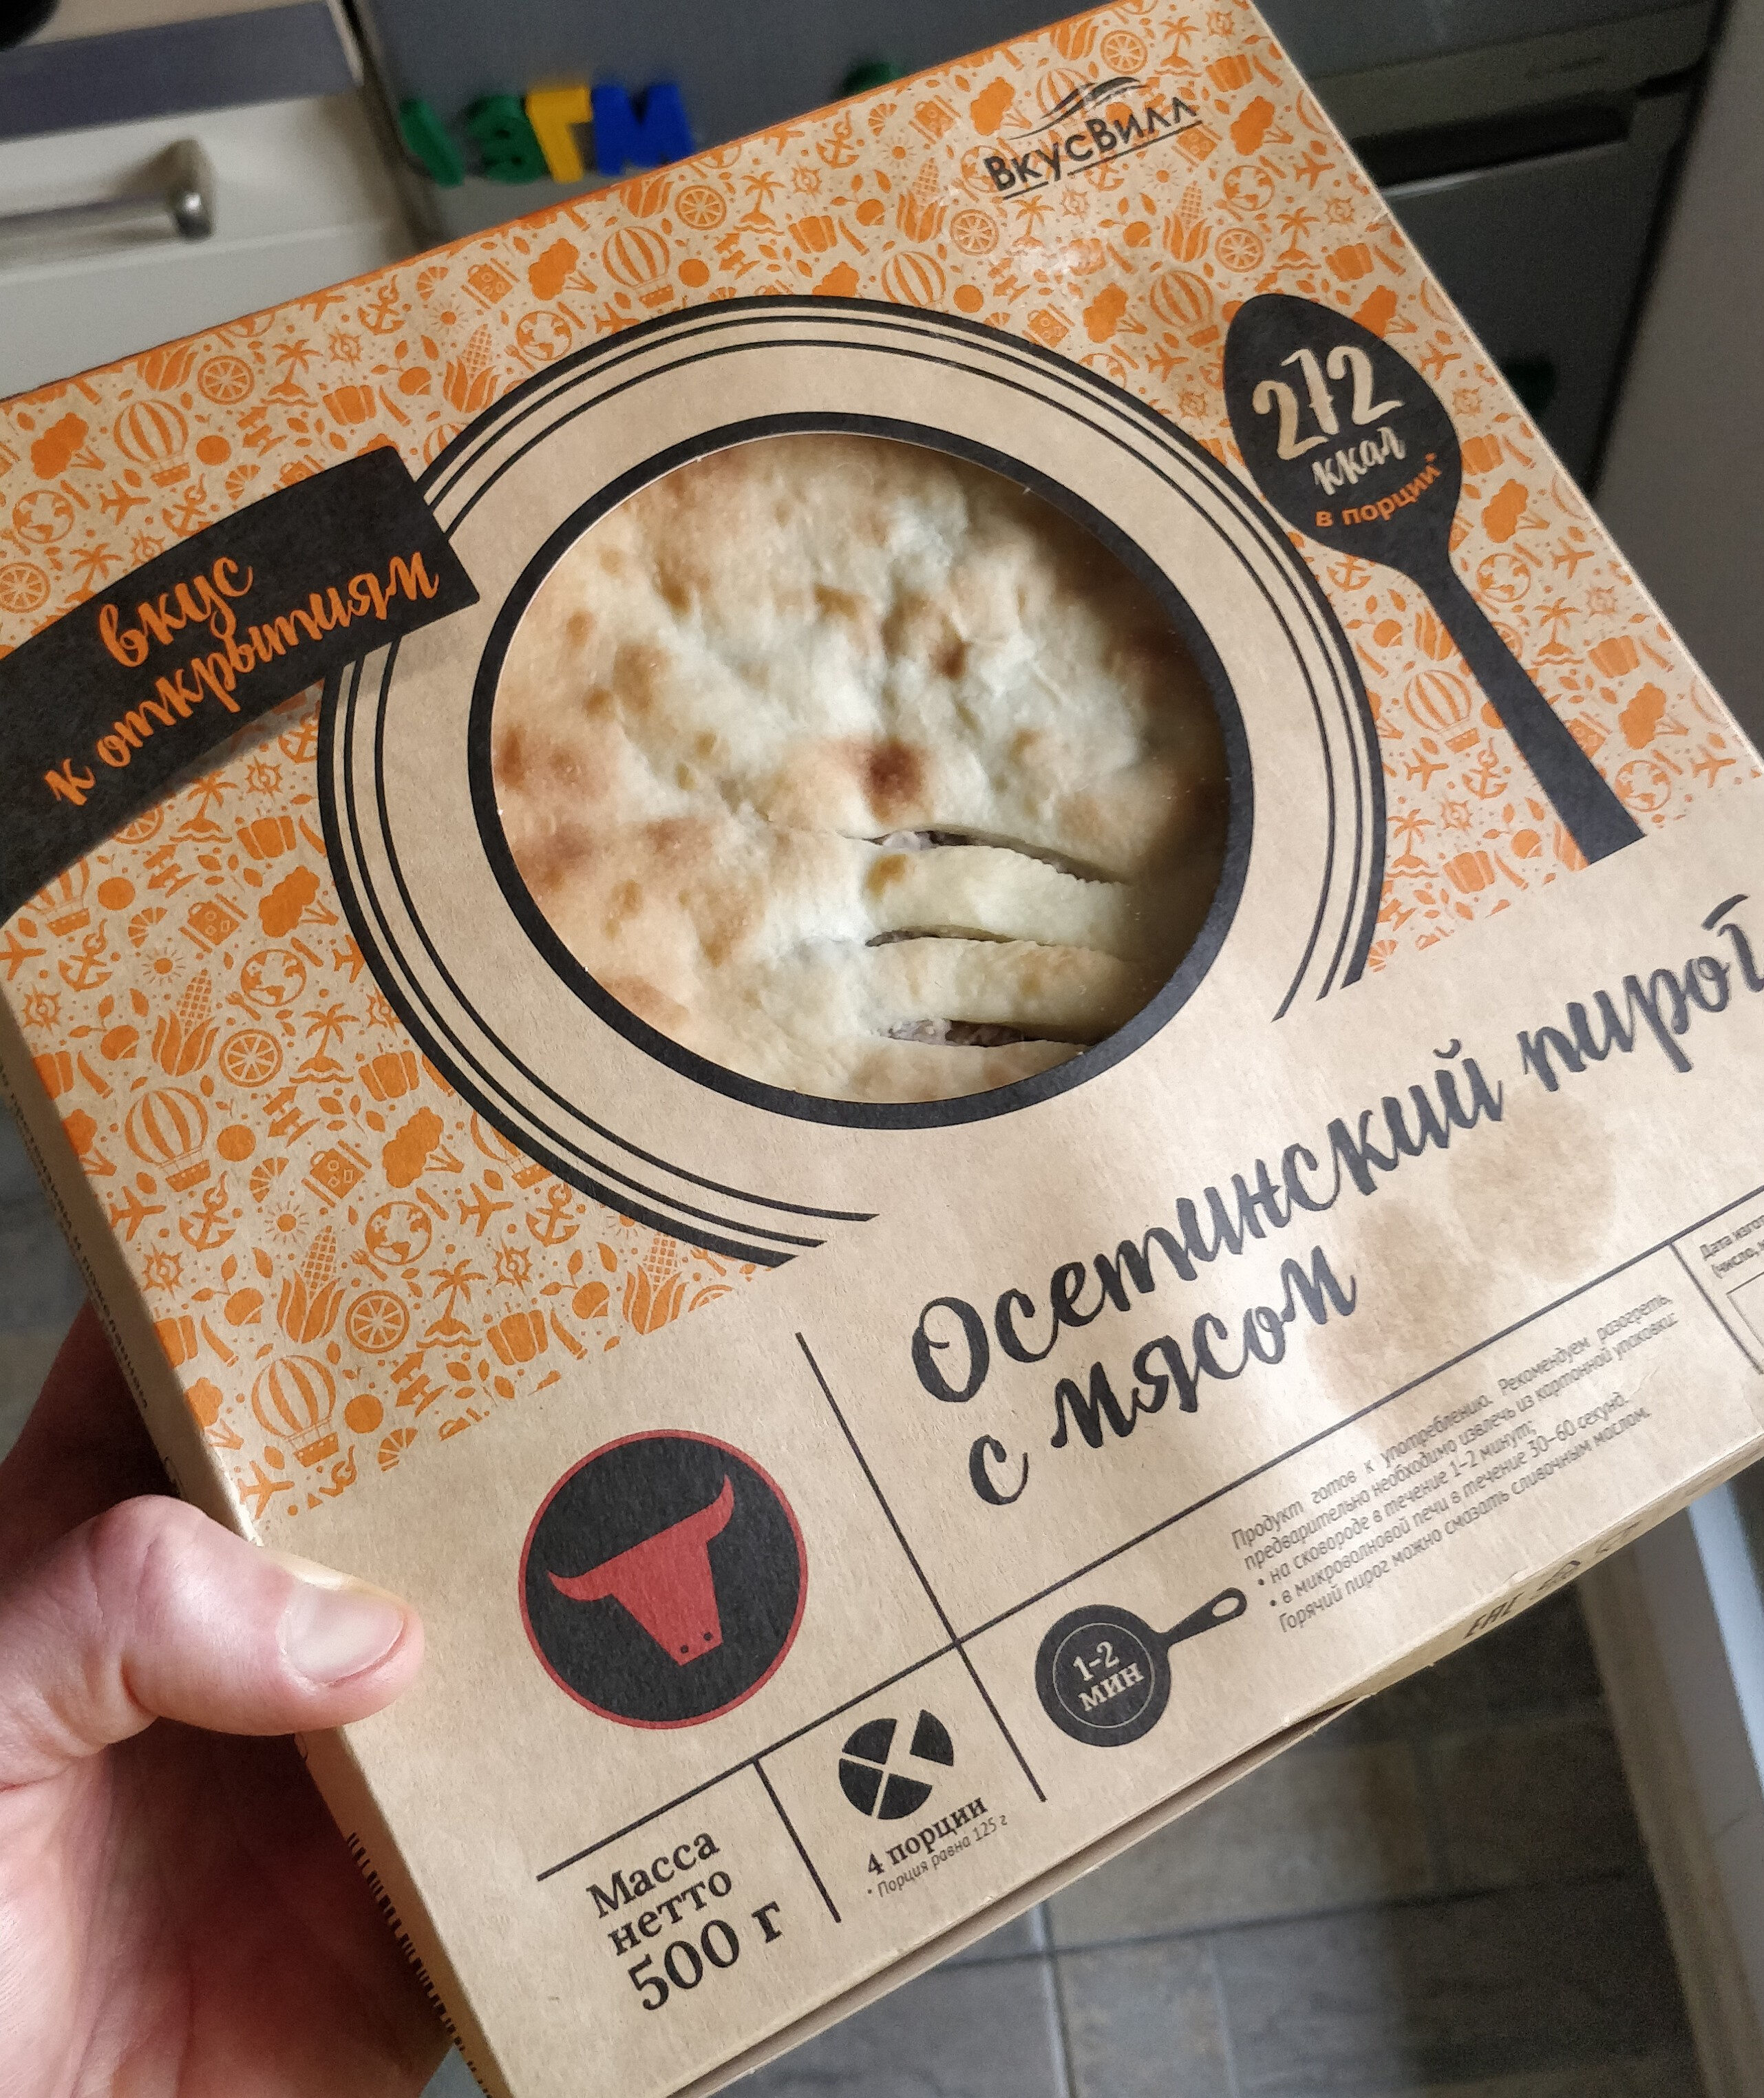 Осетинский пирог с мясом - Product - ru